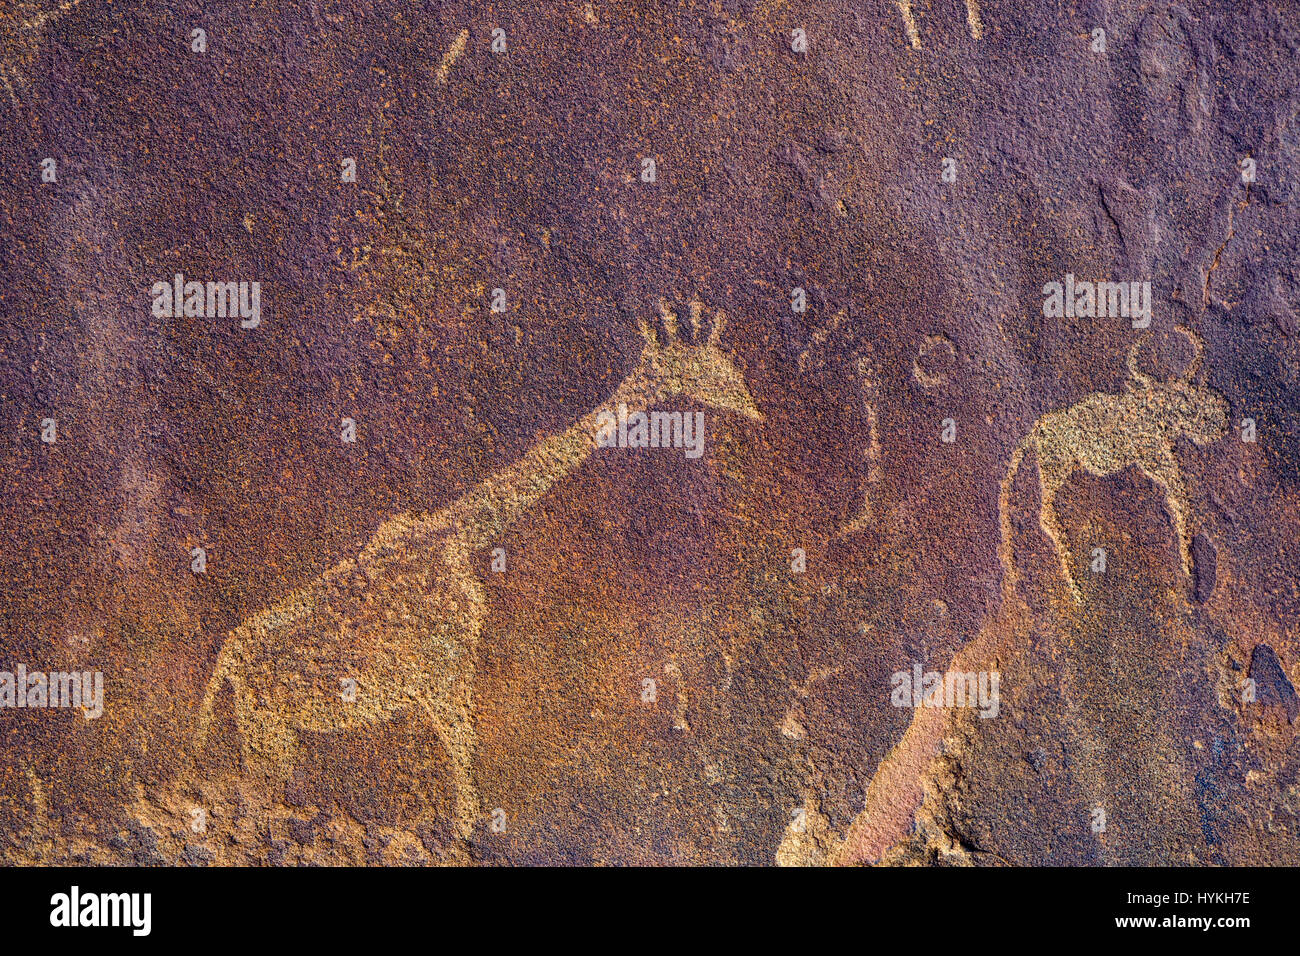 Twyfelfontein sito di antiche incisioni rupestri nella regione di Kunene Della Namibia nord-occidentale. Una delle più grandi concentrazioni di petroglifi di roccia Foto Stock